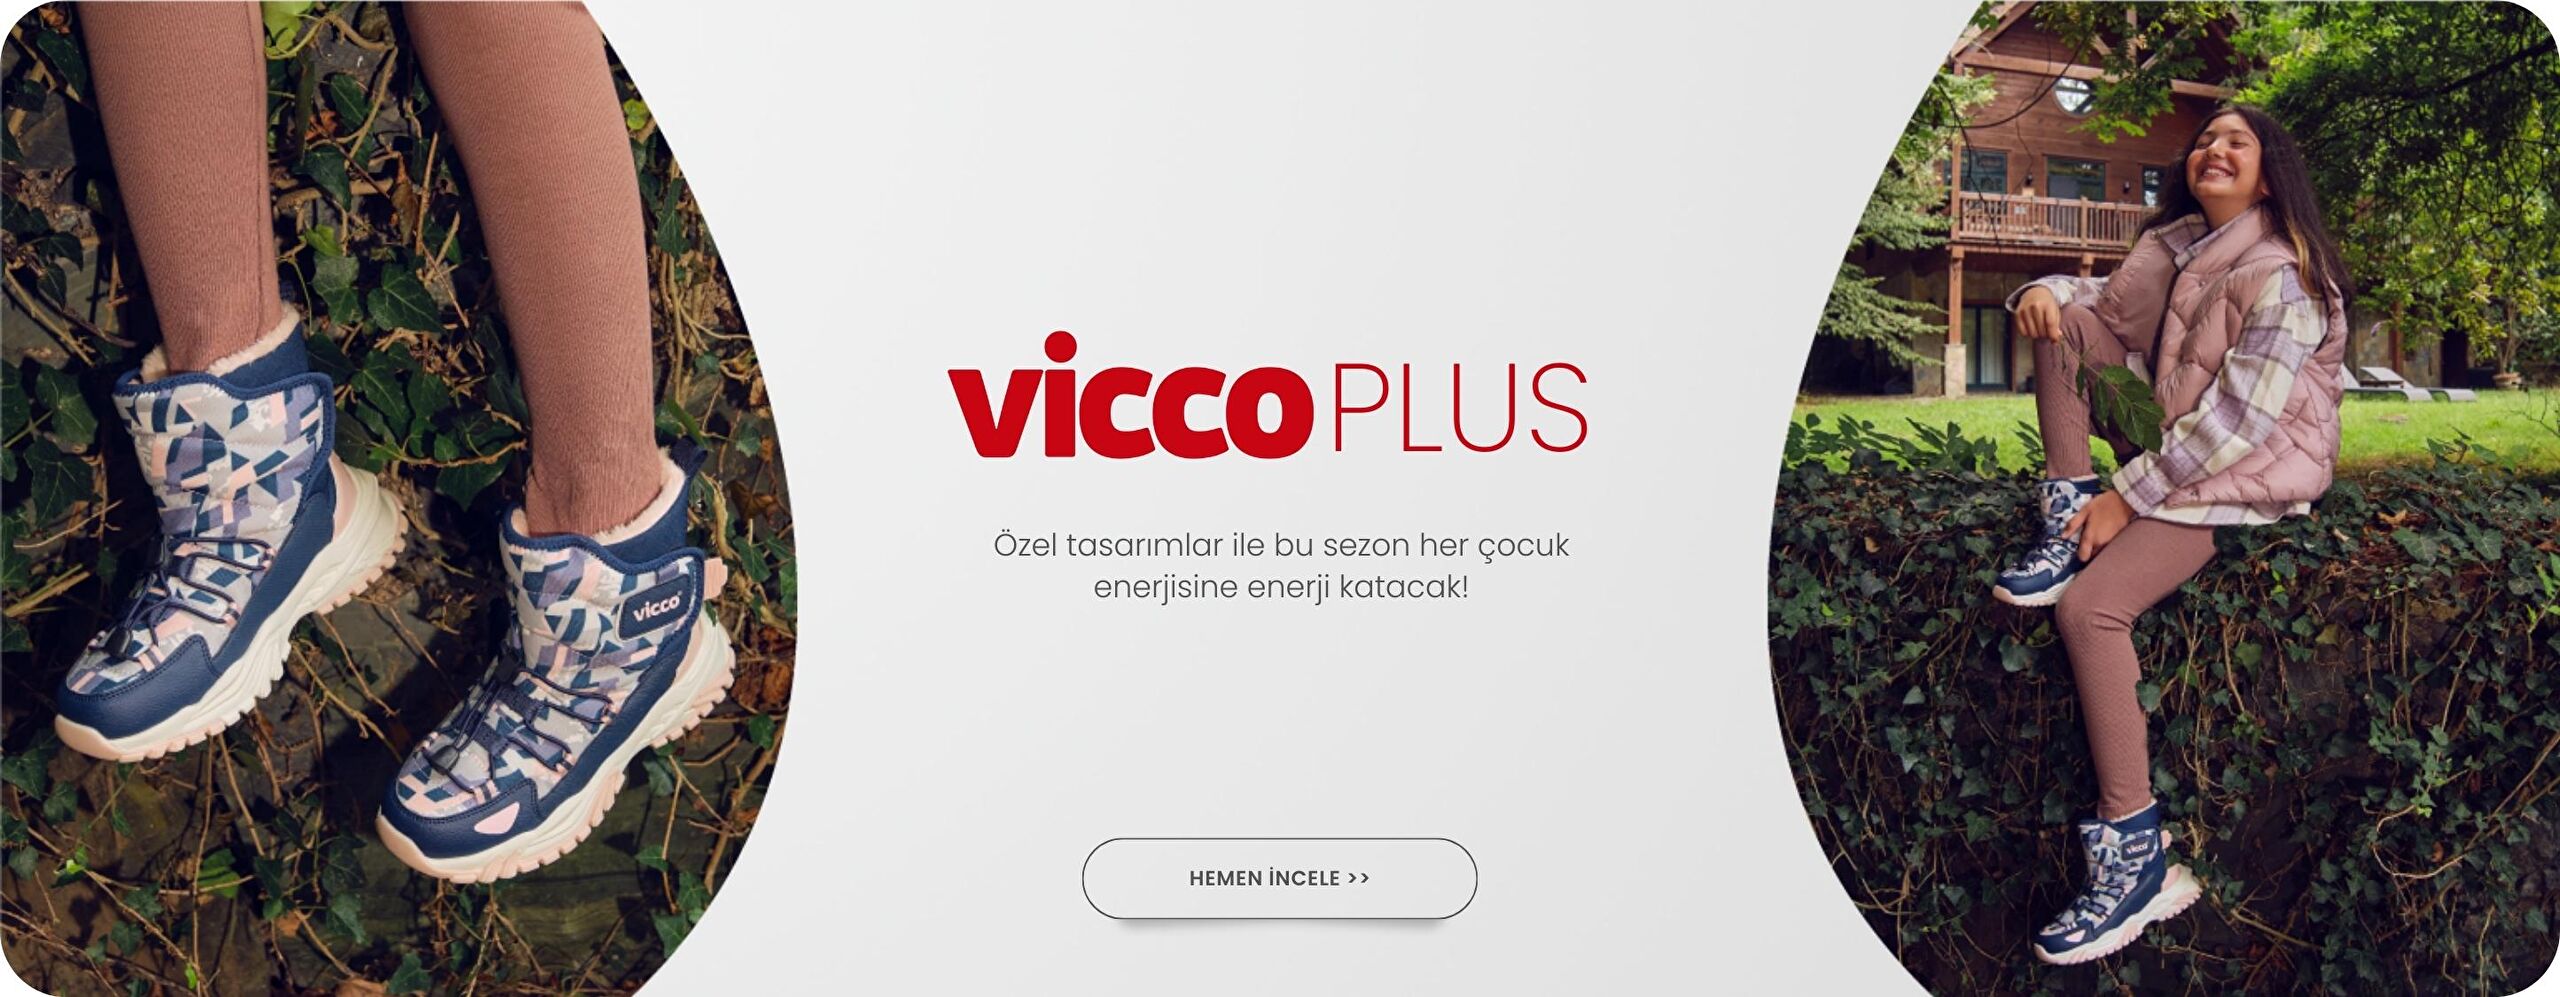 Vicco Plus